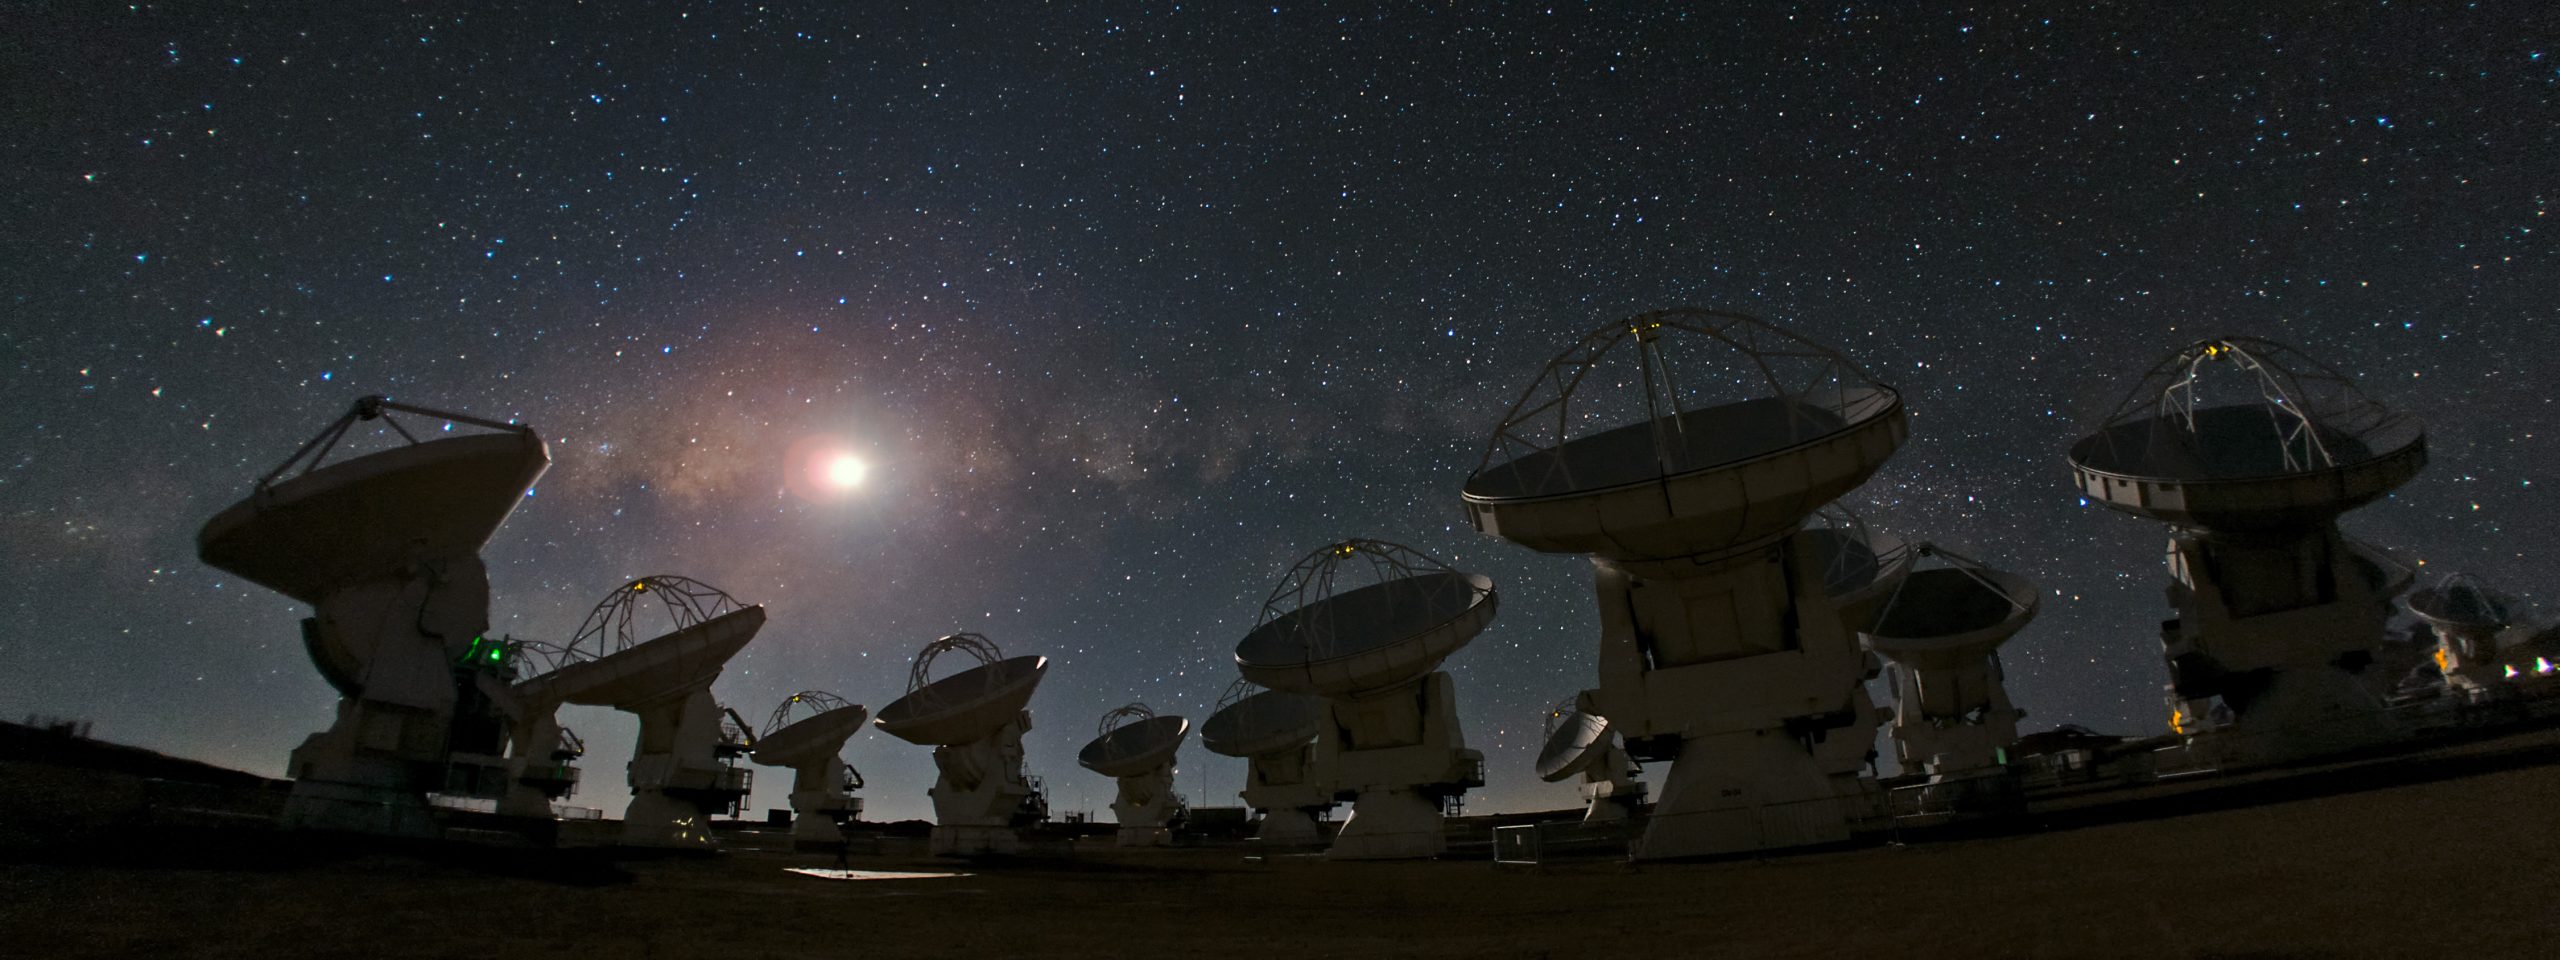 Continúan los ciberataques: Observatorio ALMA se vio obligado a suspender las observaciones astronómicas